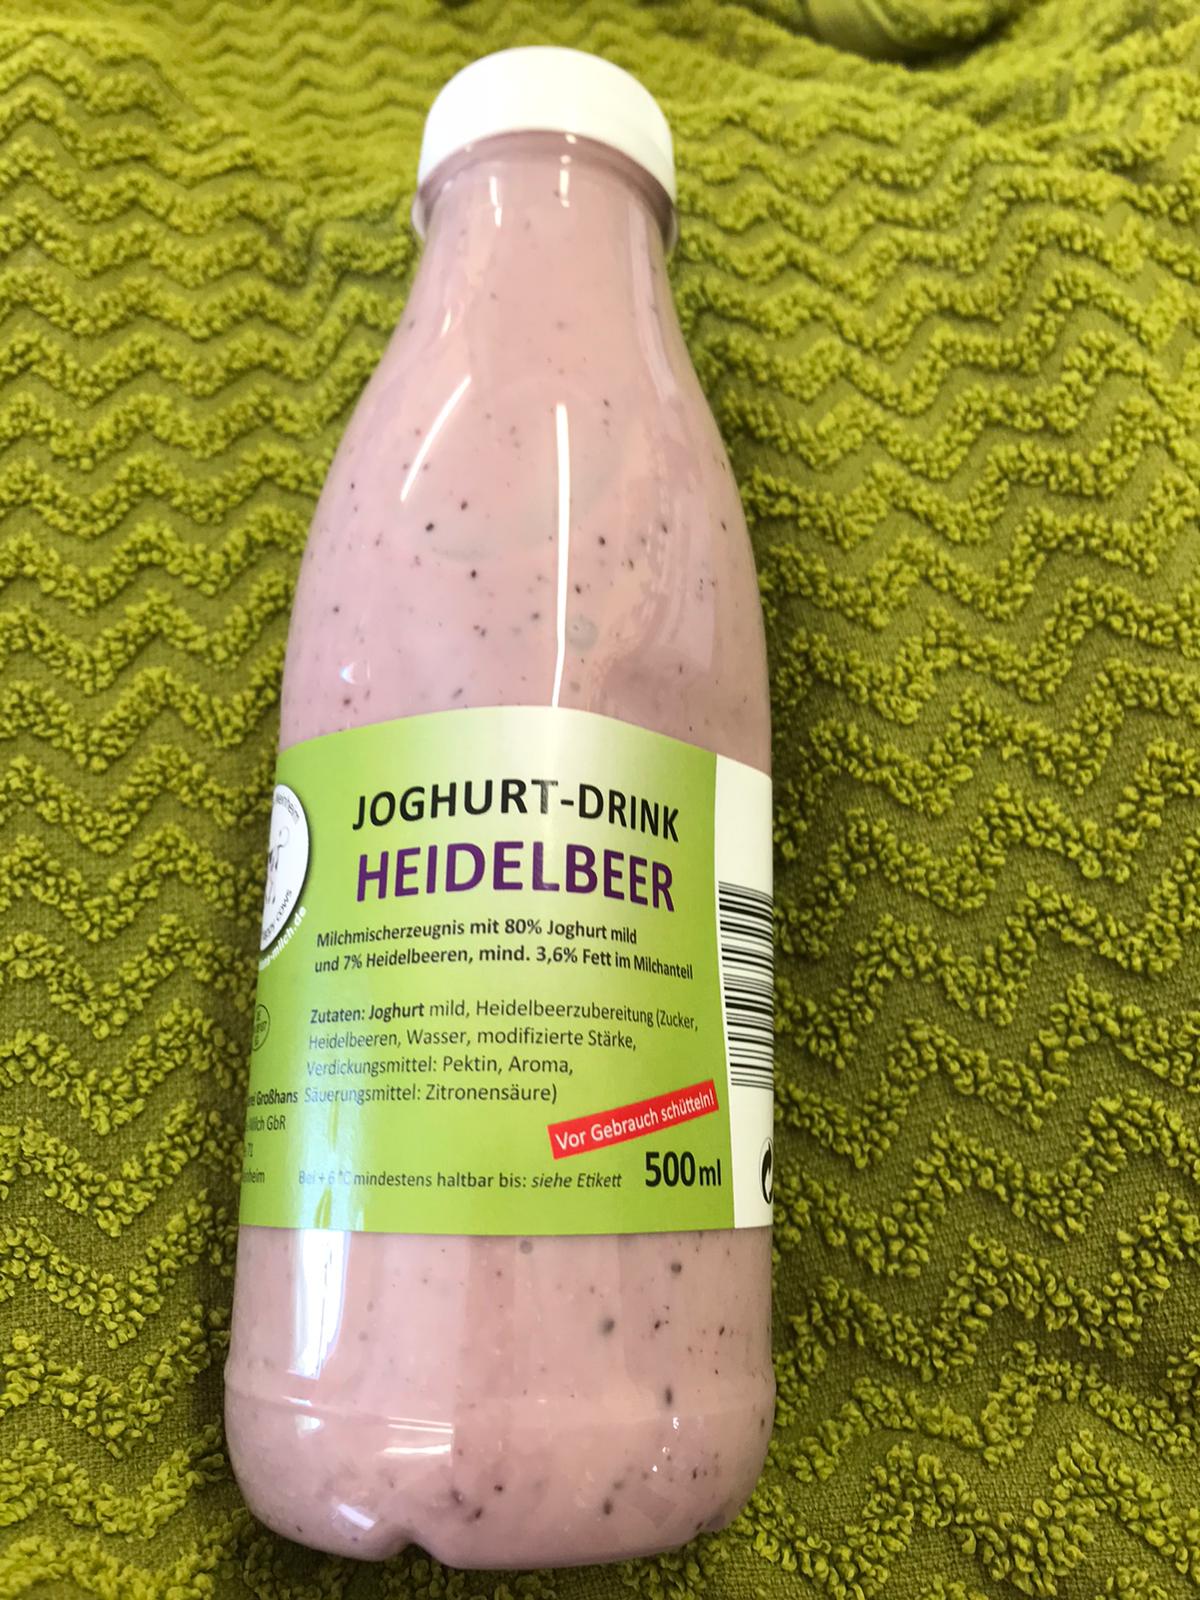 Bauernladen Gieser - Joghurt-Drink Heidelbeer